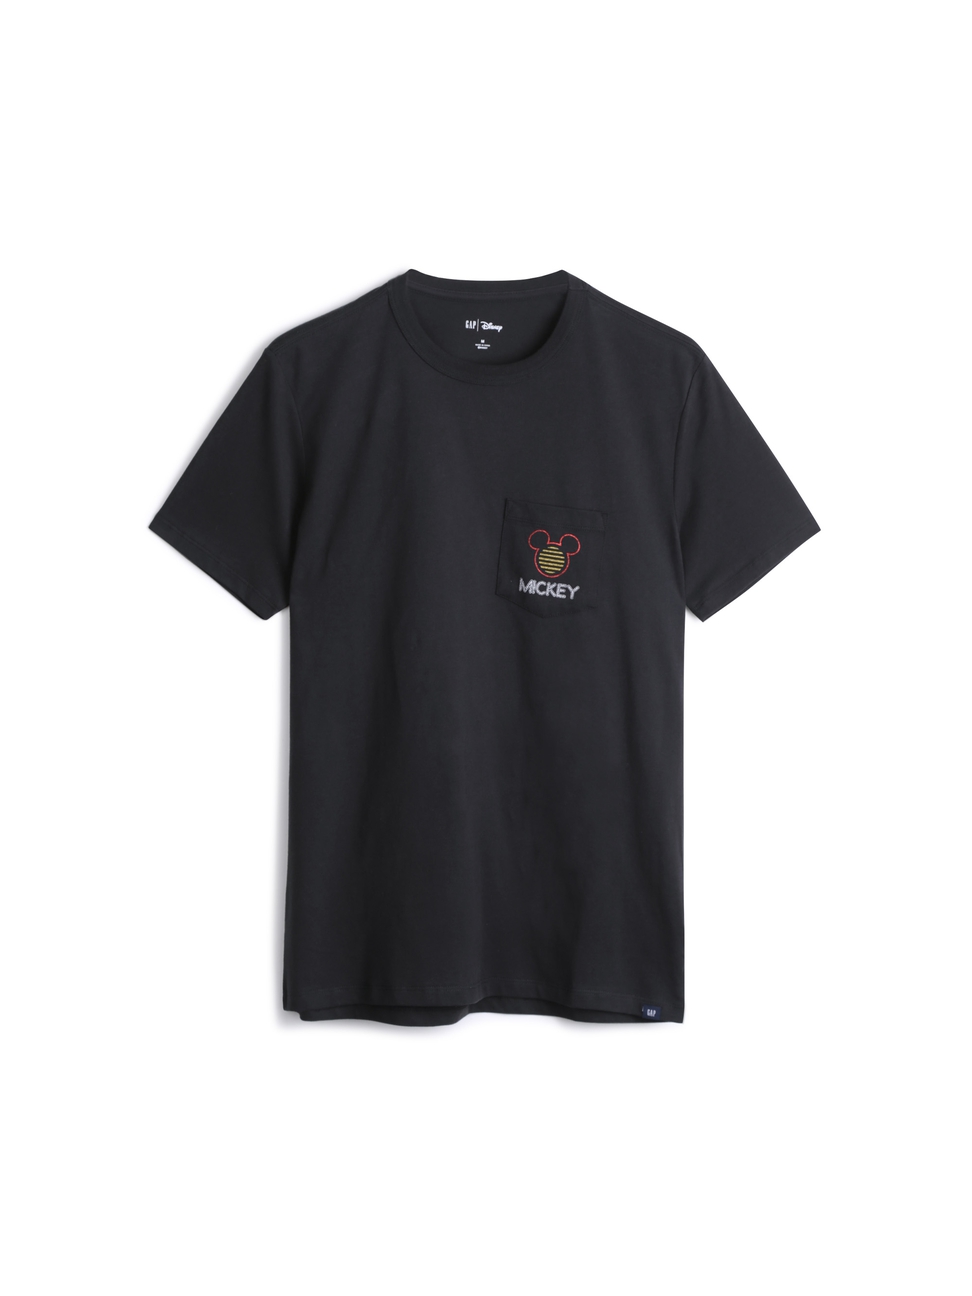 男裝|Gap x Disney迪士尼聯名 米奇棉質舒適圓領短袖T恤-正黑色